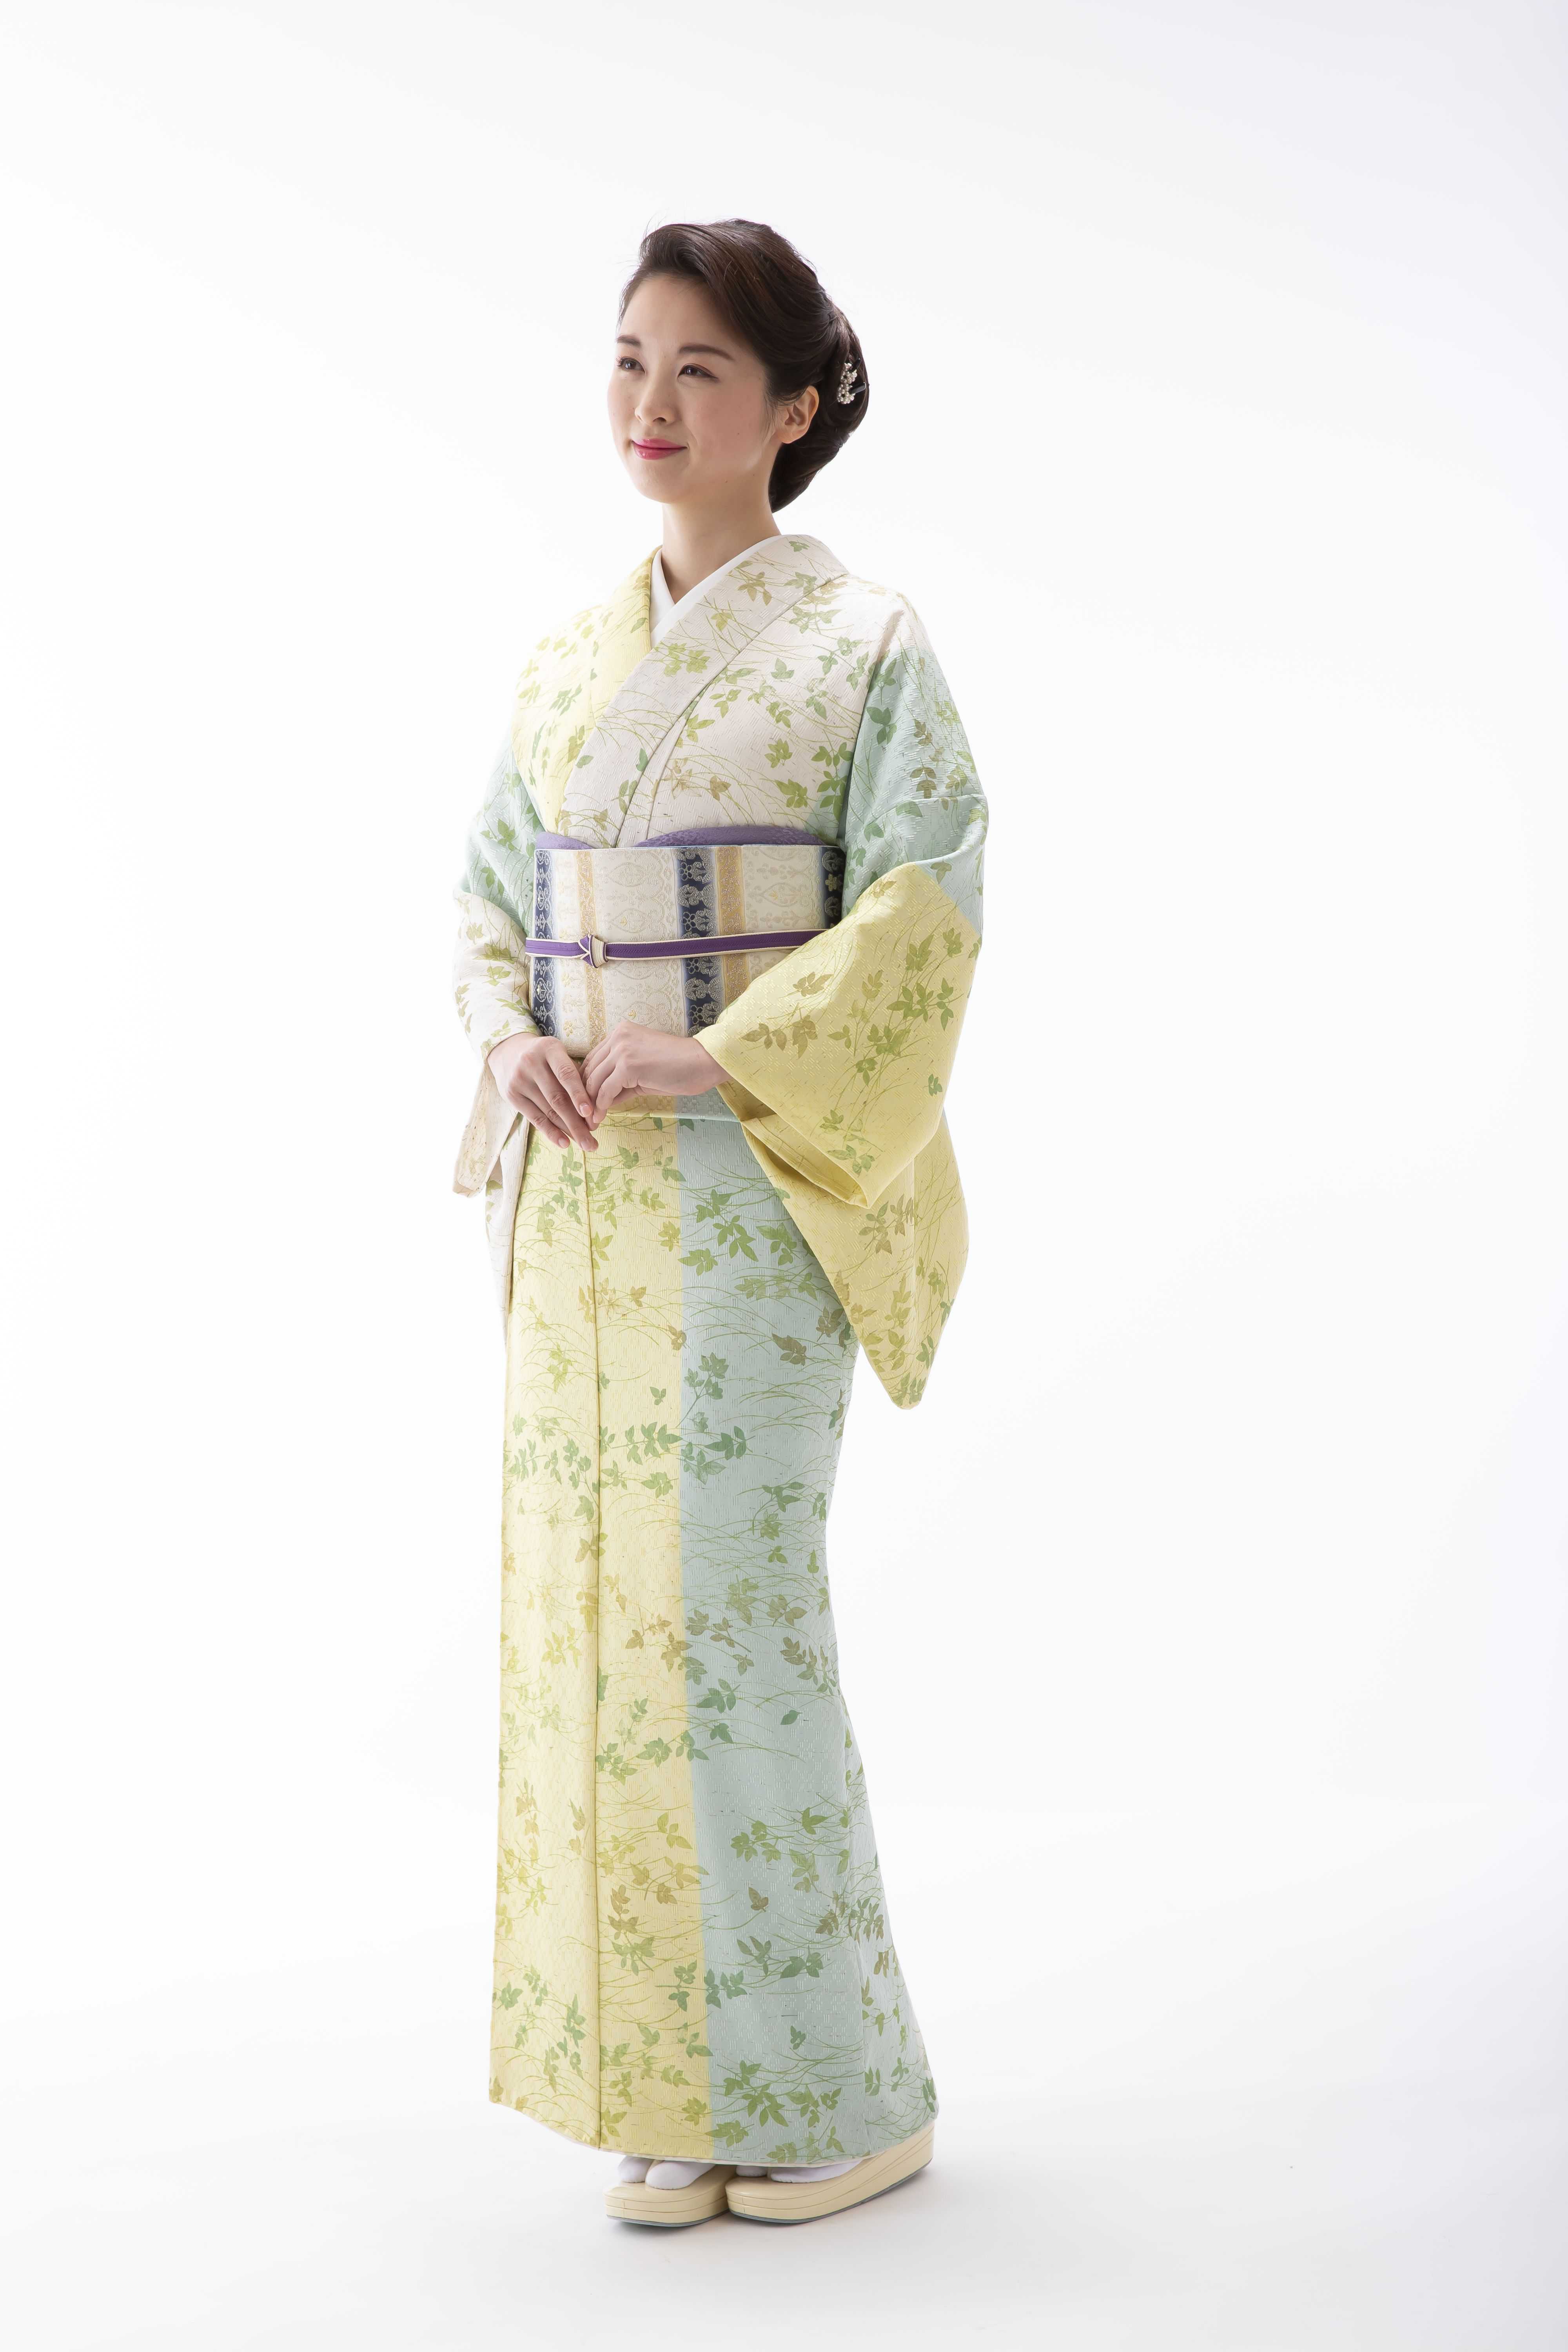 sekibanzome ichinokura kyoto obi kimono yamaguchi ikoma nara